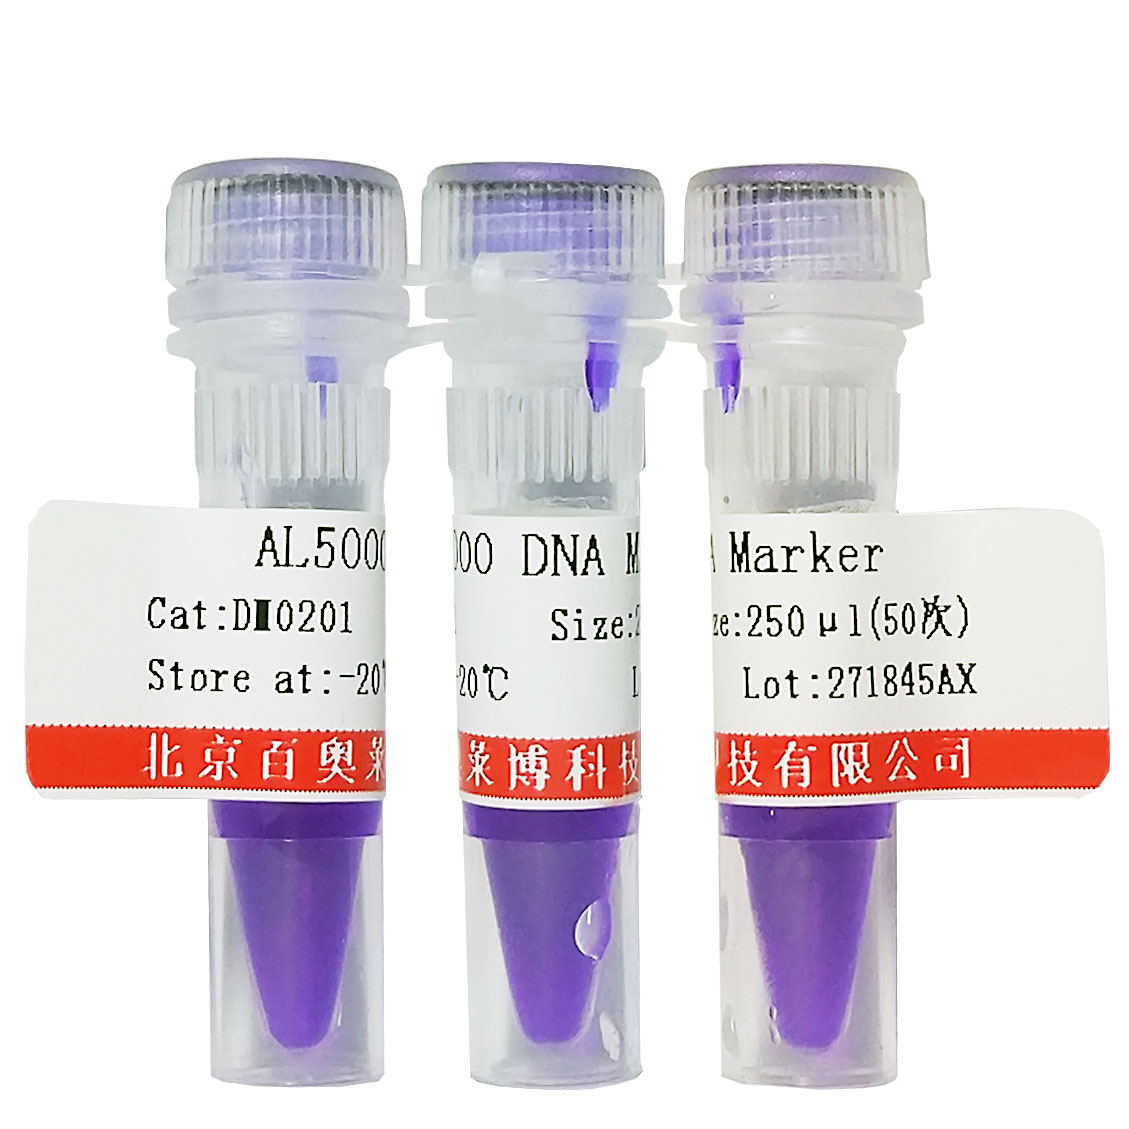 北京周期蛋白依赖性激酶(CDK)抑制剂(LEE011 succinate)现货价格